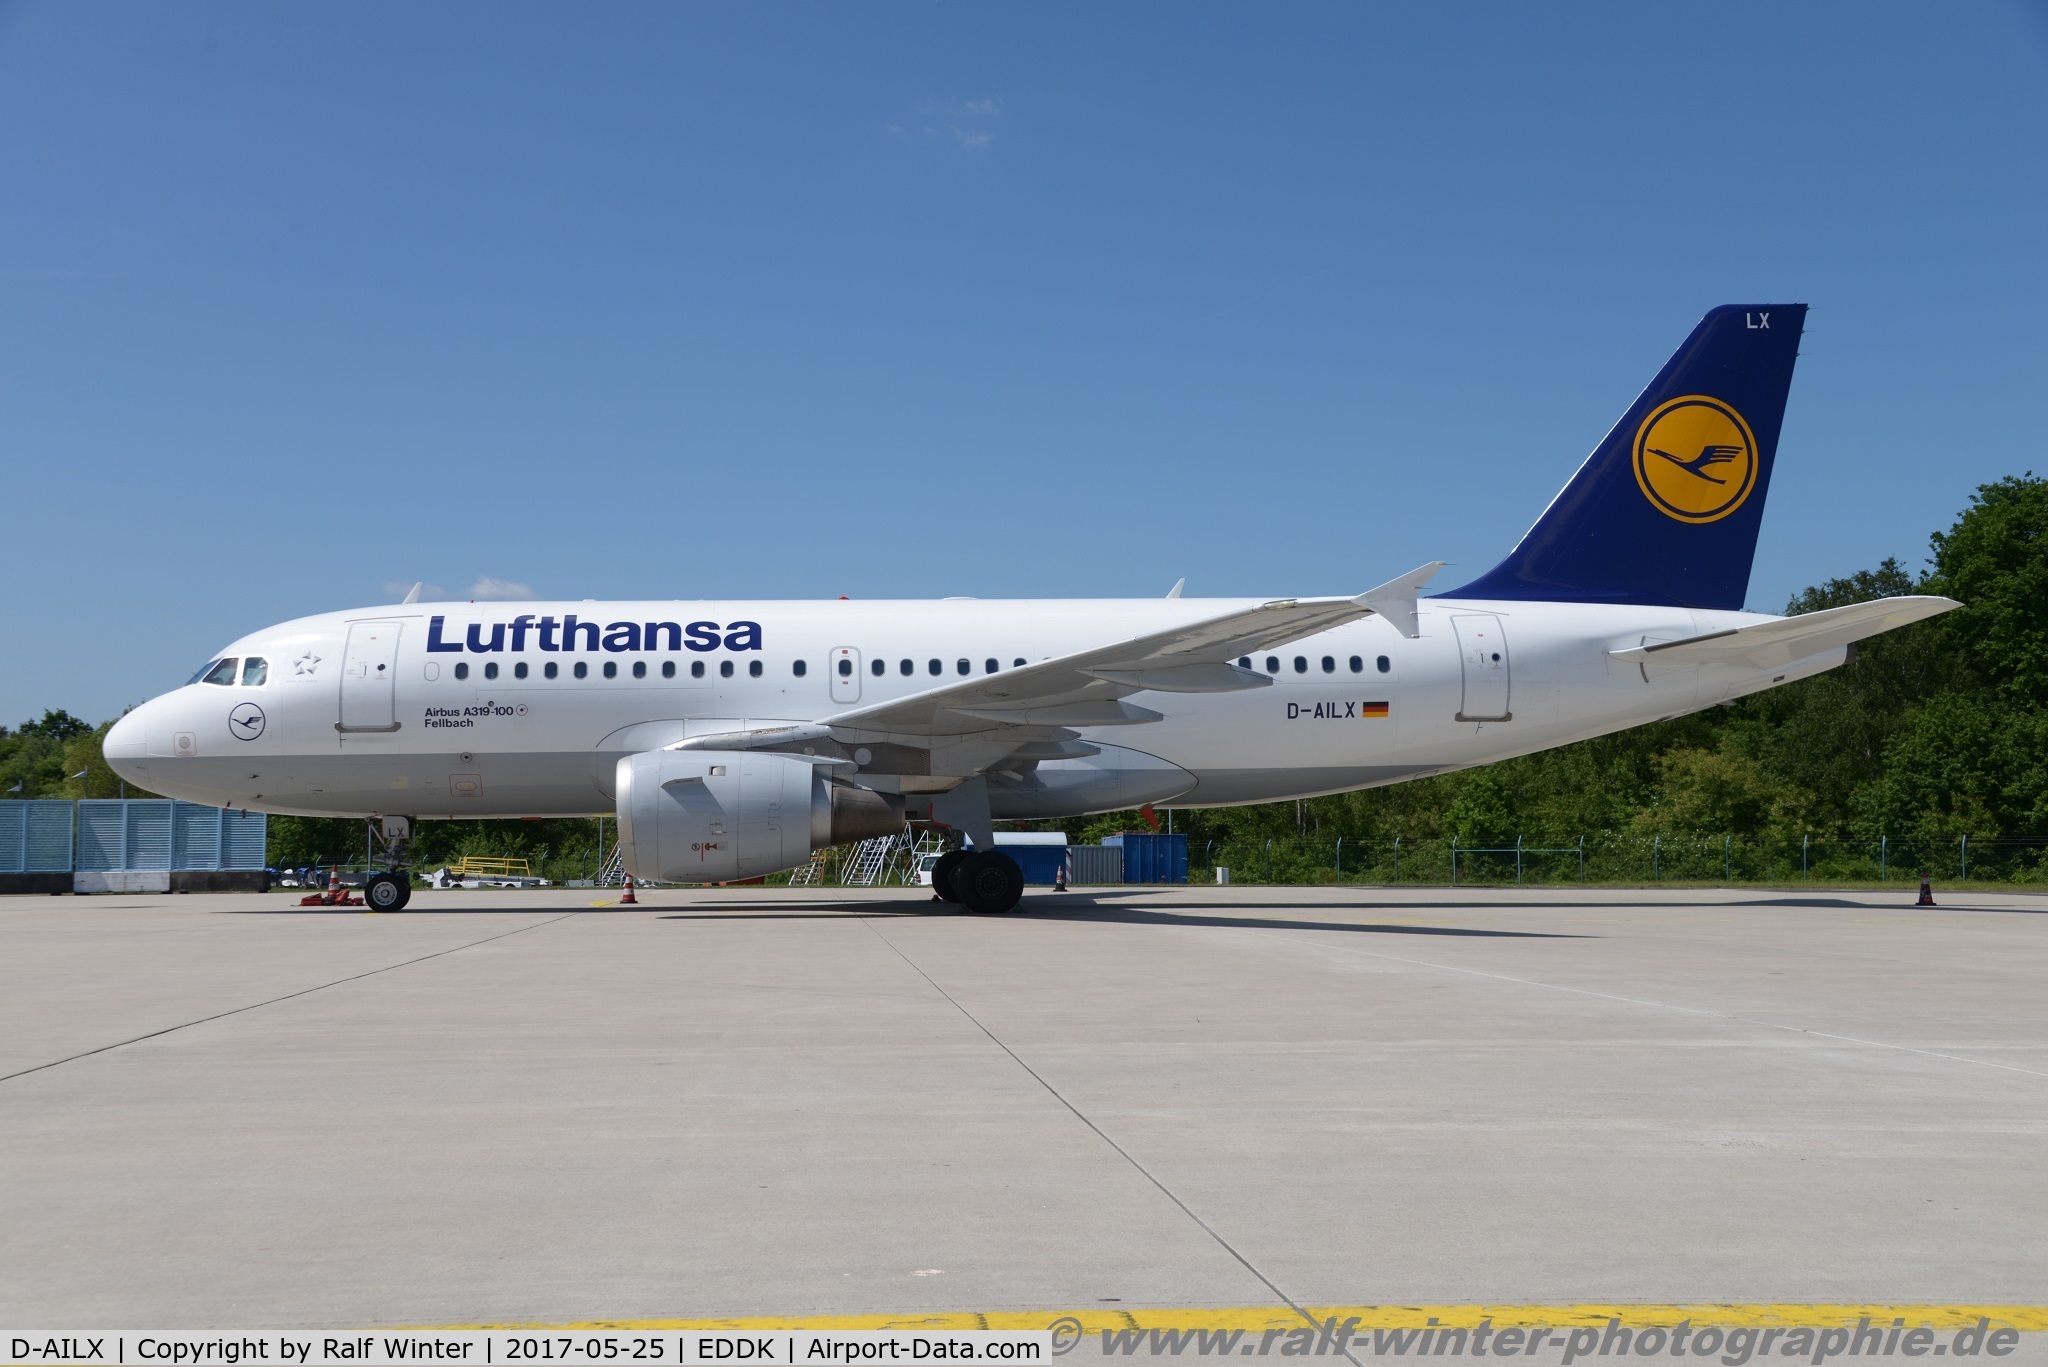 D-AILX, 1998 Airbus A319-114 C/N 860, Airbus A319-114 - LH DLH Lufthansa 'Fellbach' - 860 - D-AILX - 25.05.2017 - CGN